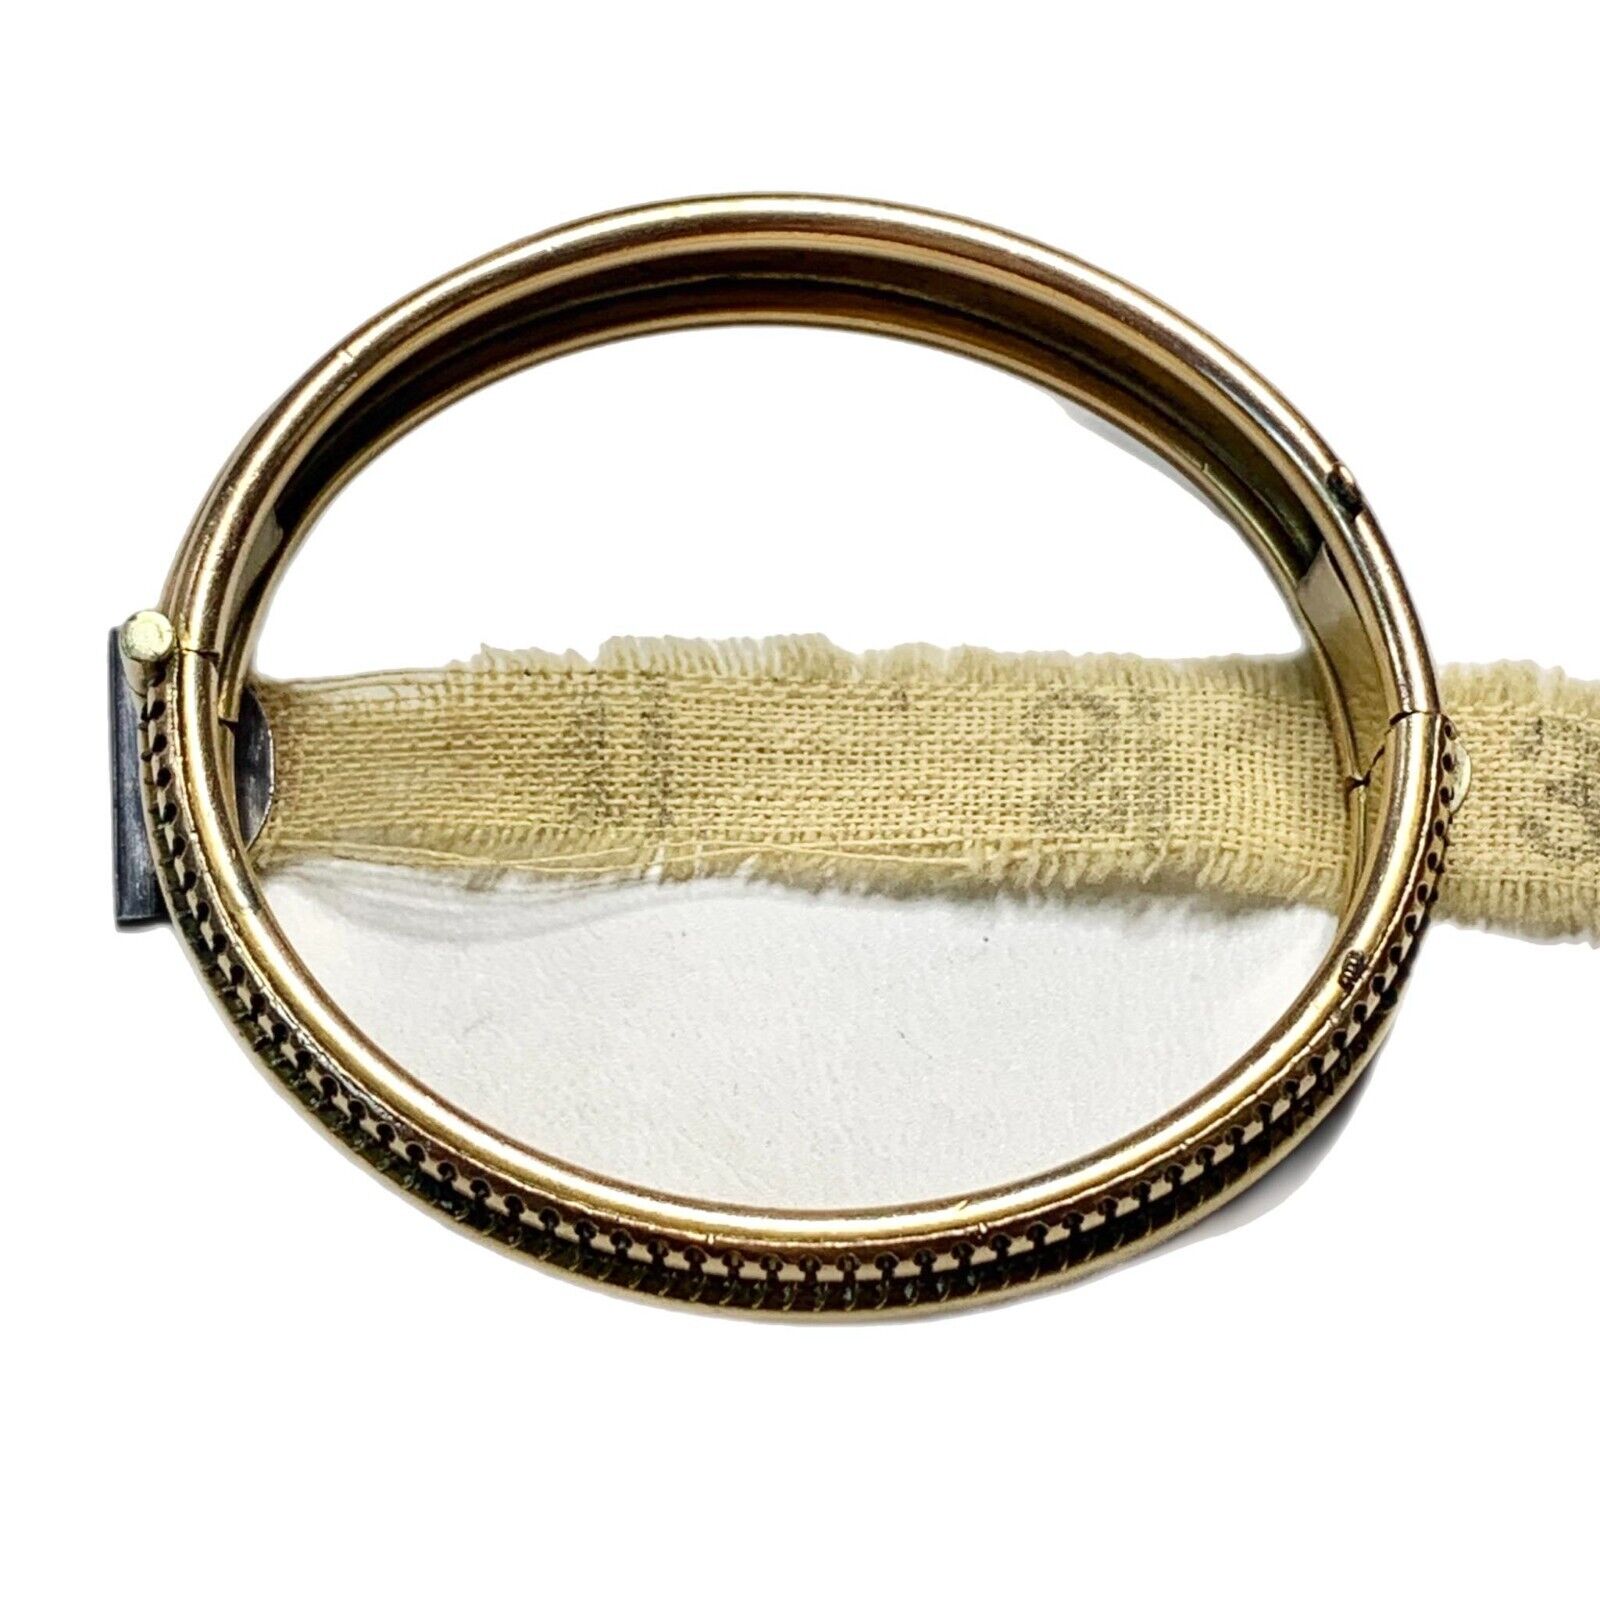 Wide Clamper Bracelet, Gold Fill Bangle, 7” - image 3